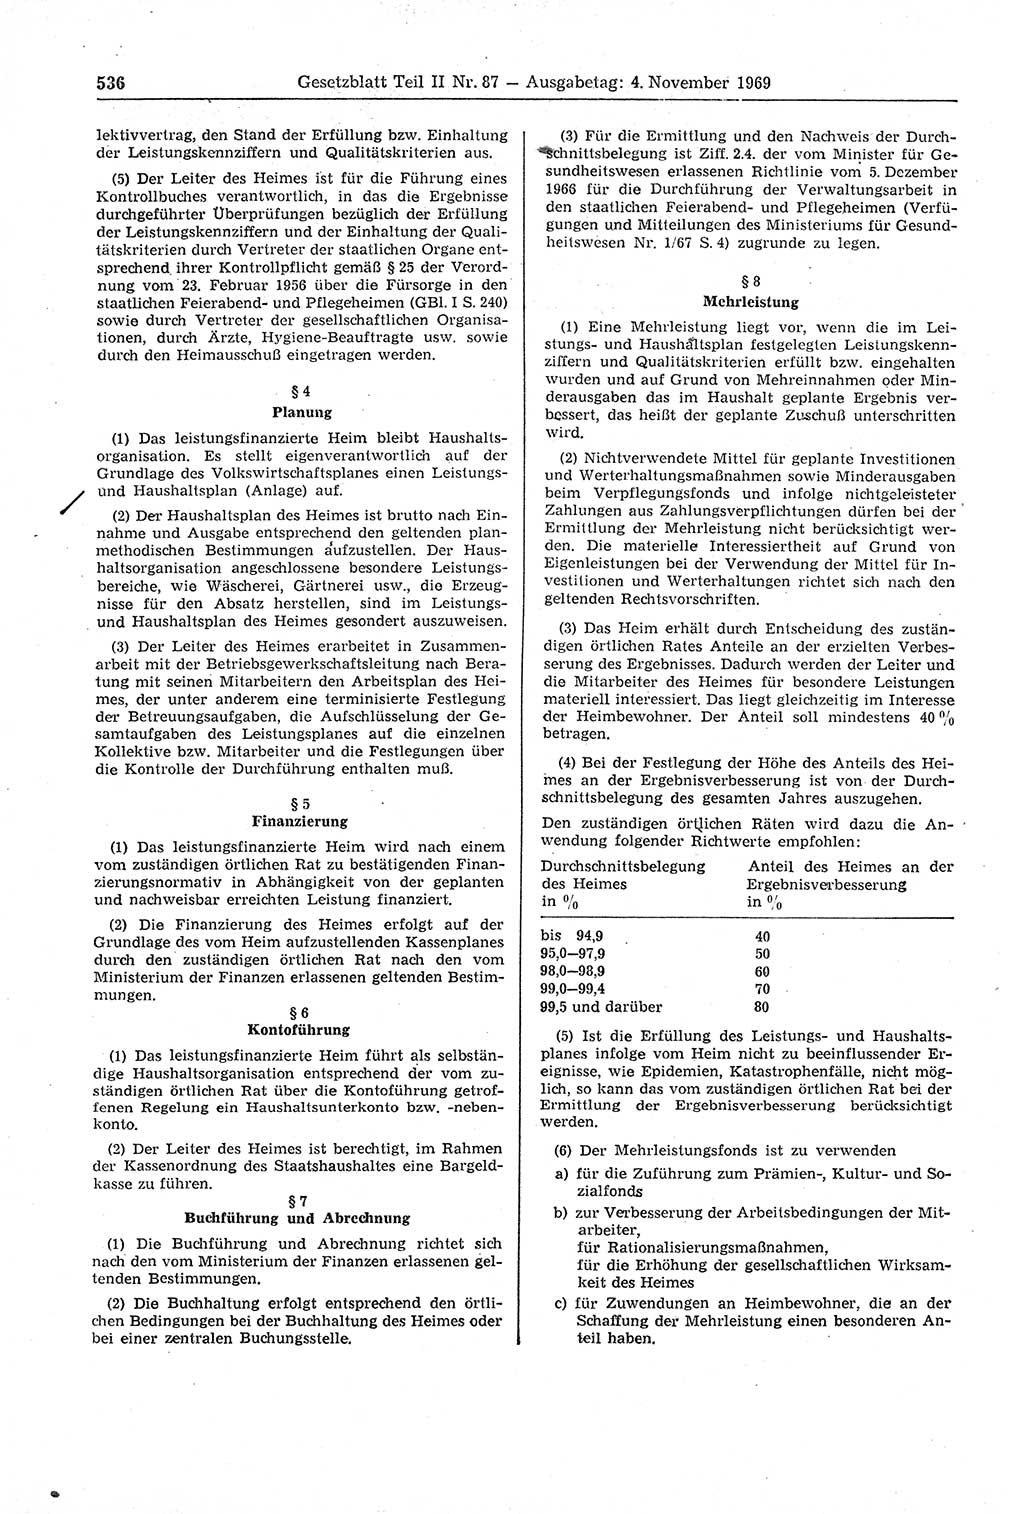 Gesetzblatt (GBl.) der Deutschen Demokratischen Republik (DDR) Teil ⅠⅠ 1969, Seite 536 (GBl. DDR ⅠⅠ 1969, S. 536)